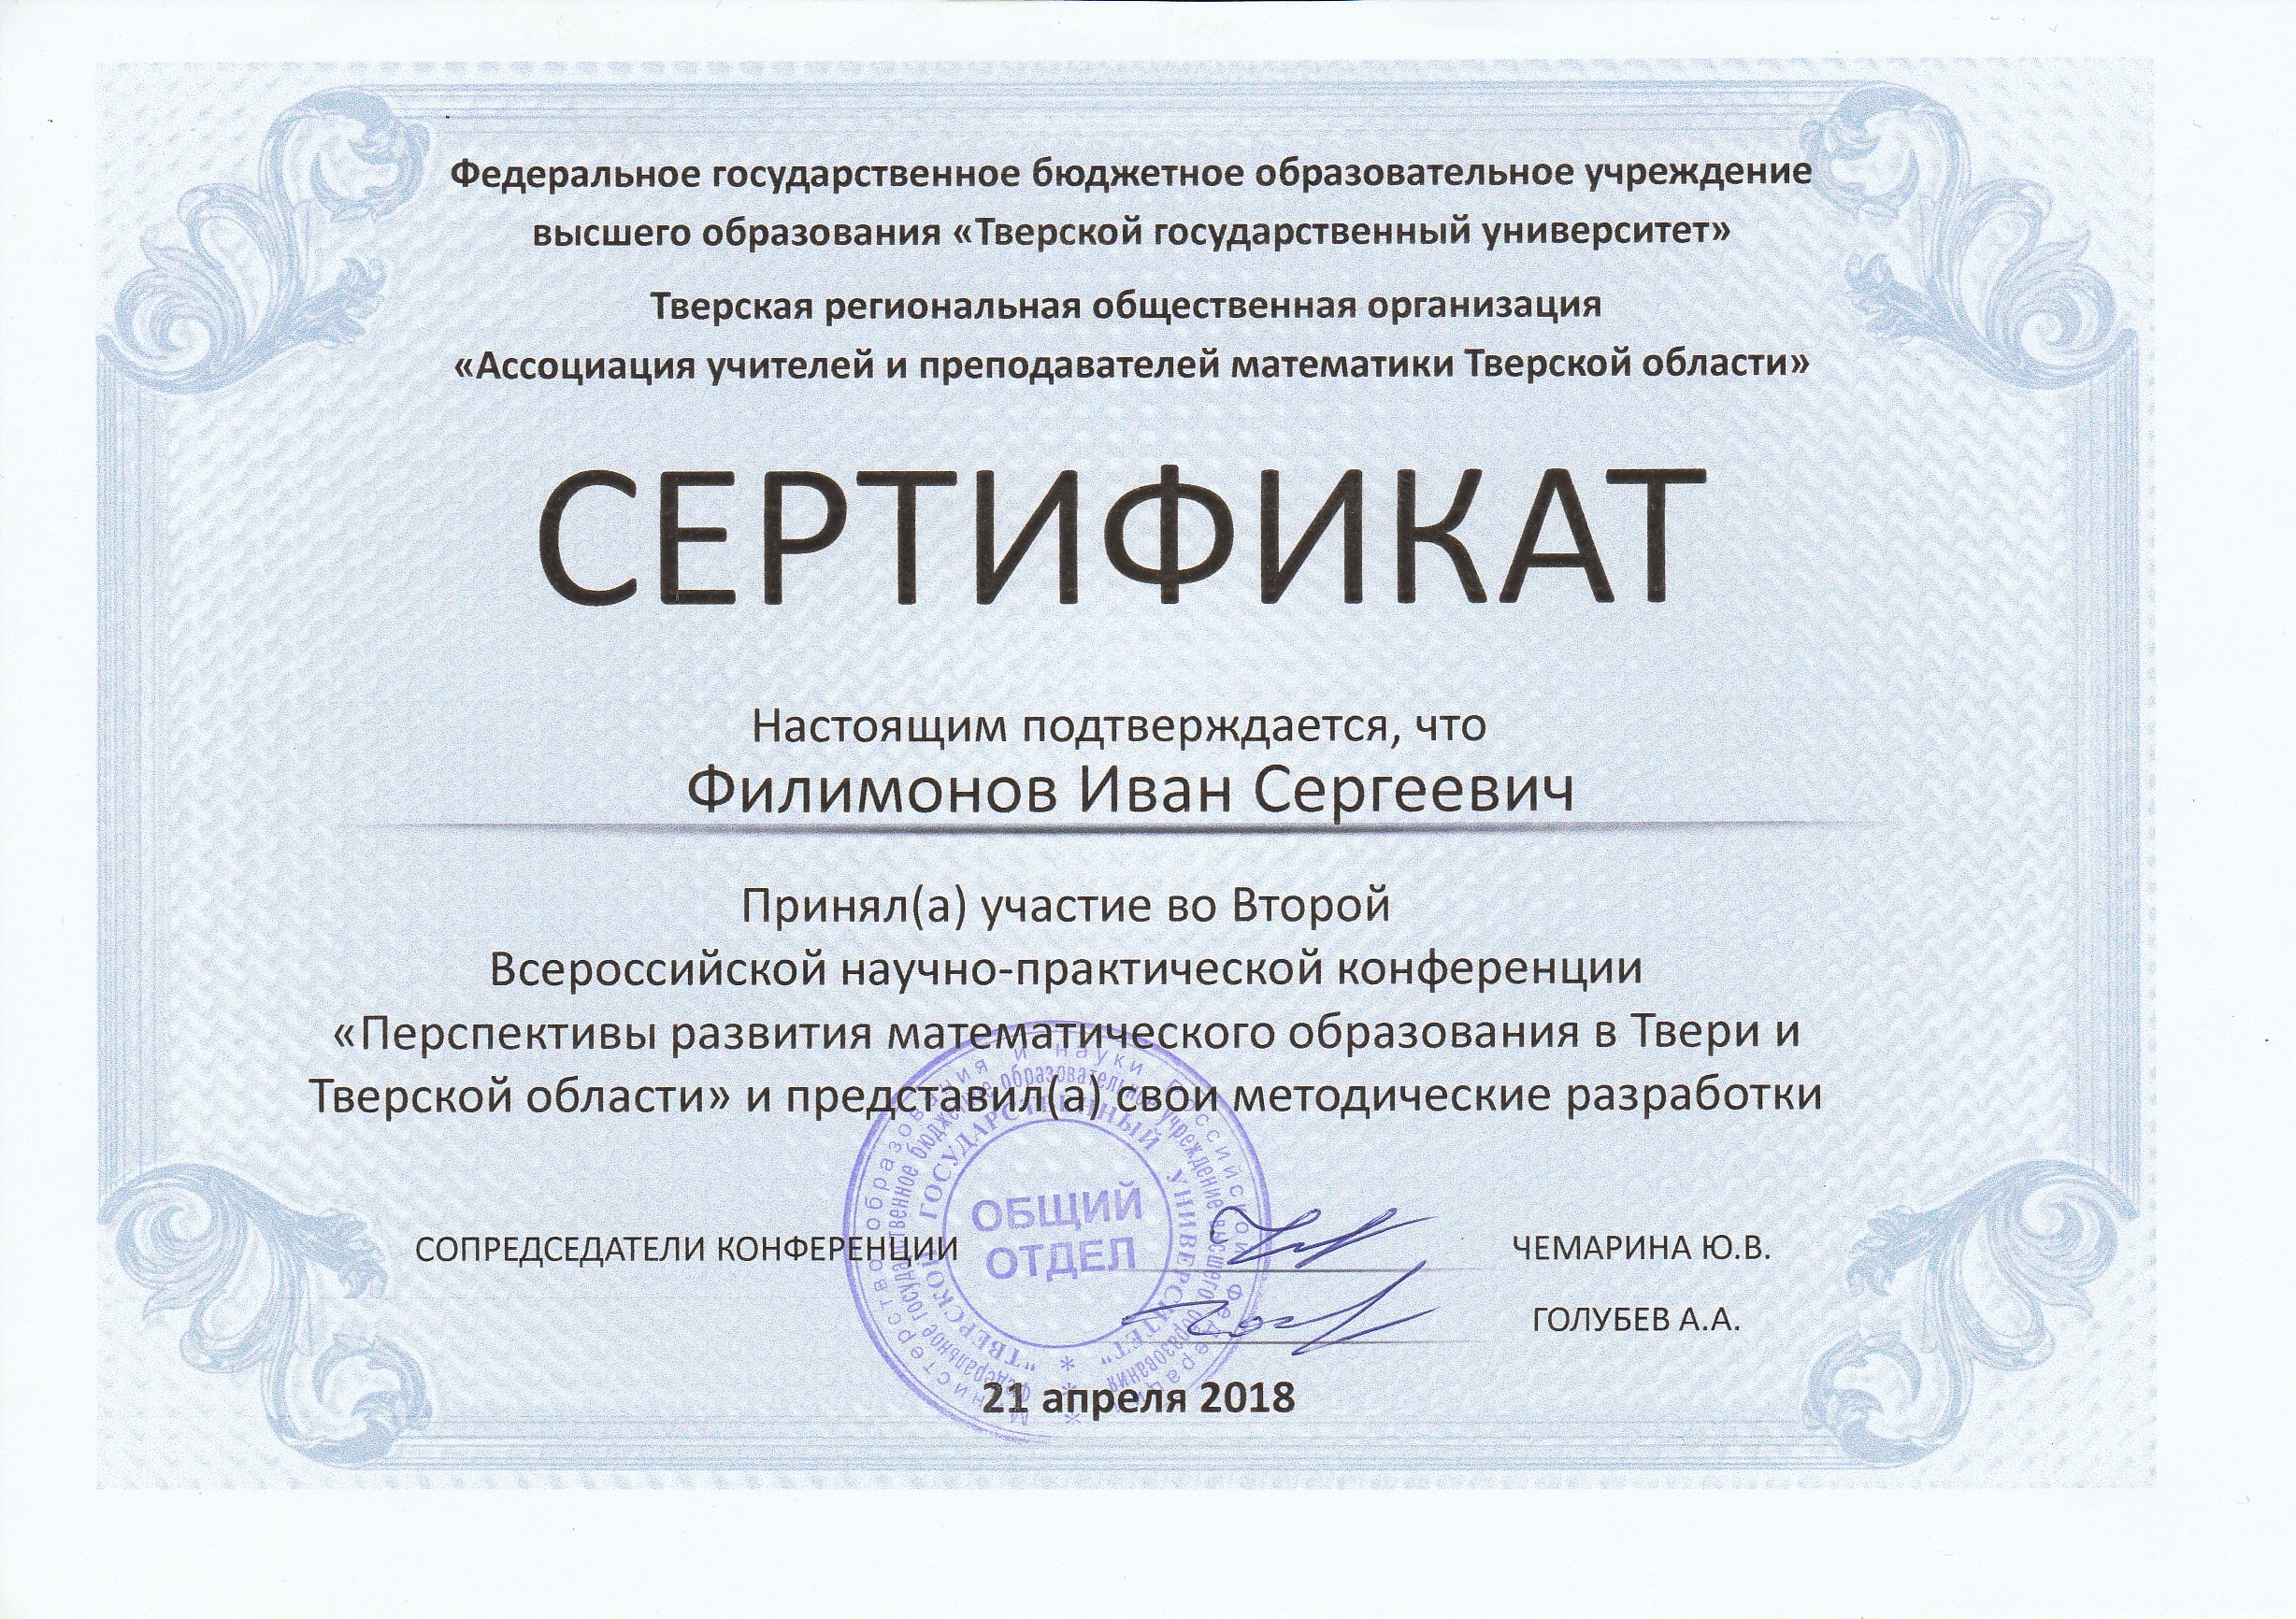 Сертификат_Статья_2018.jpg